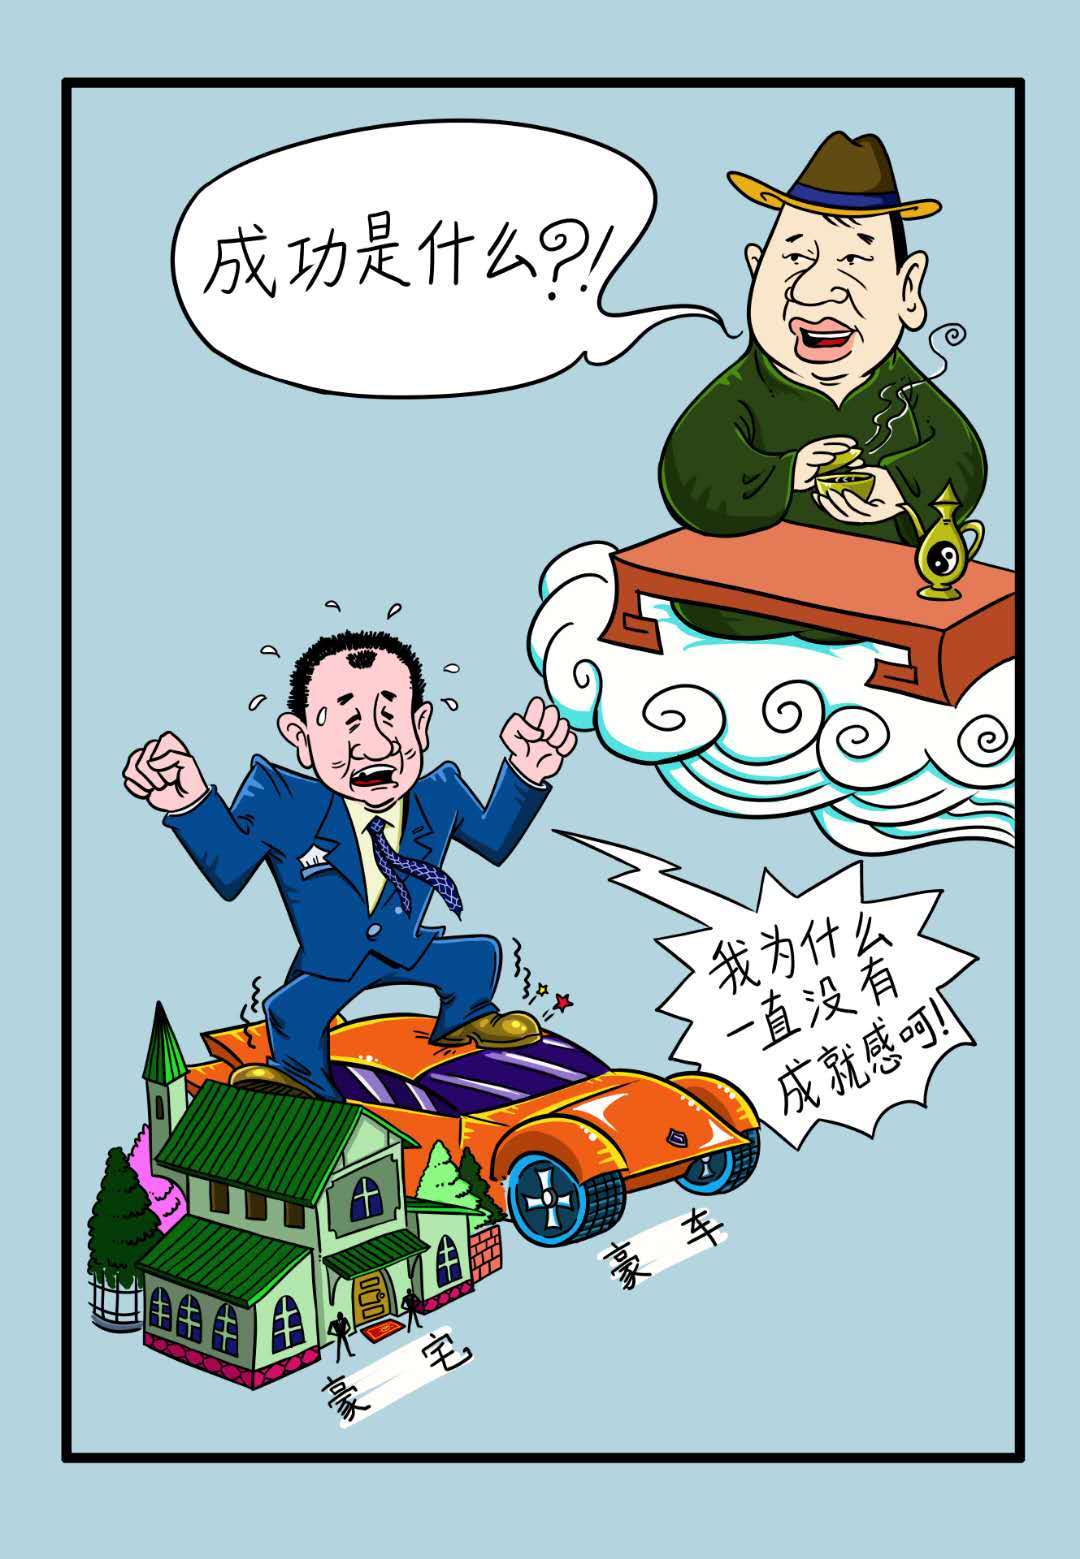 中国第一风水大师求前大师颜廷利哲理漫画